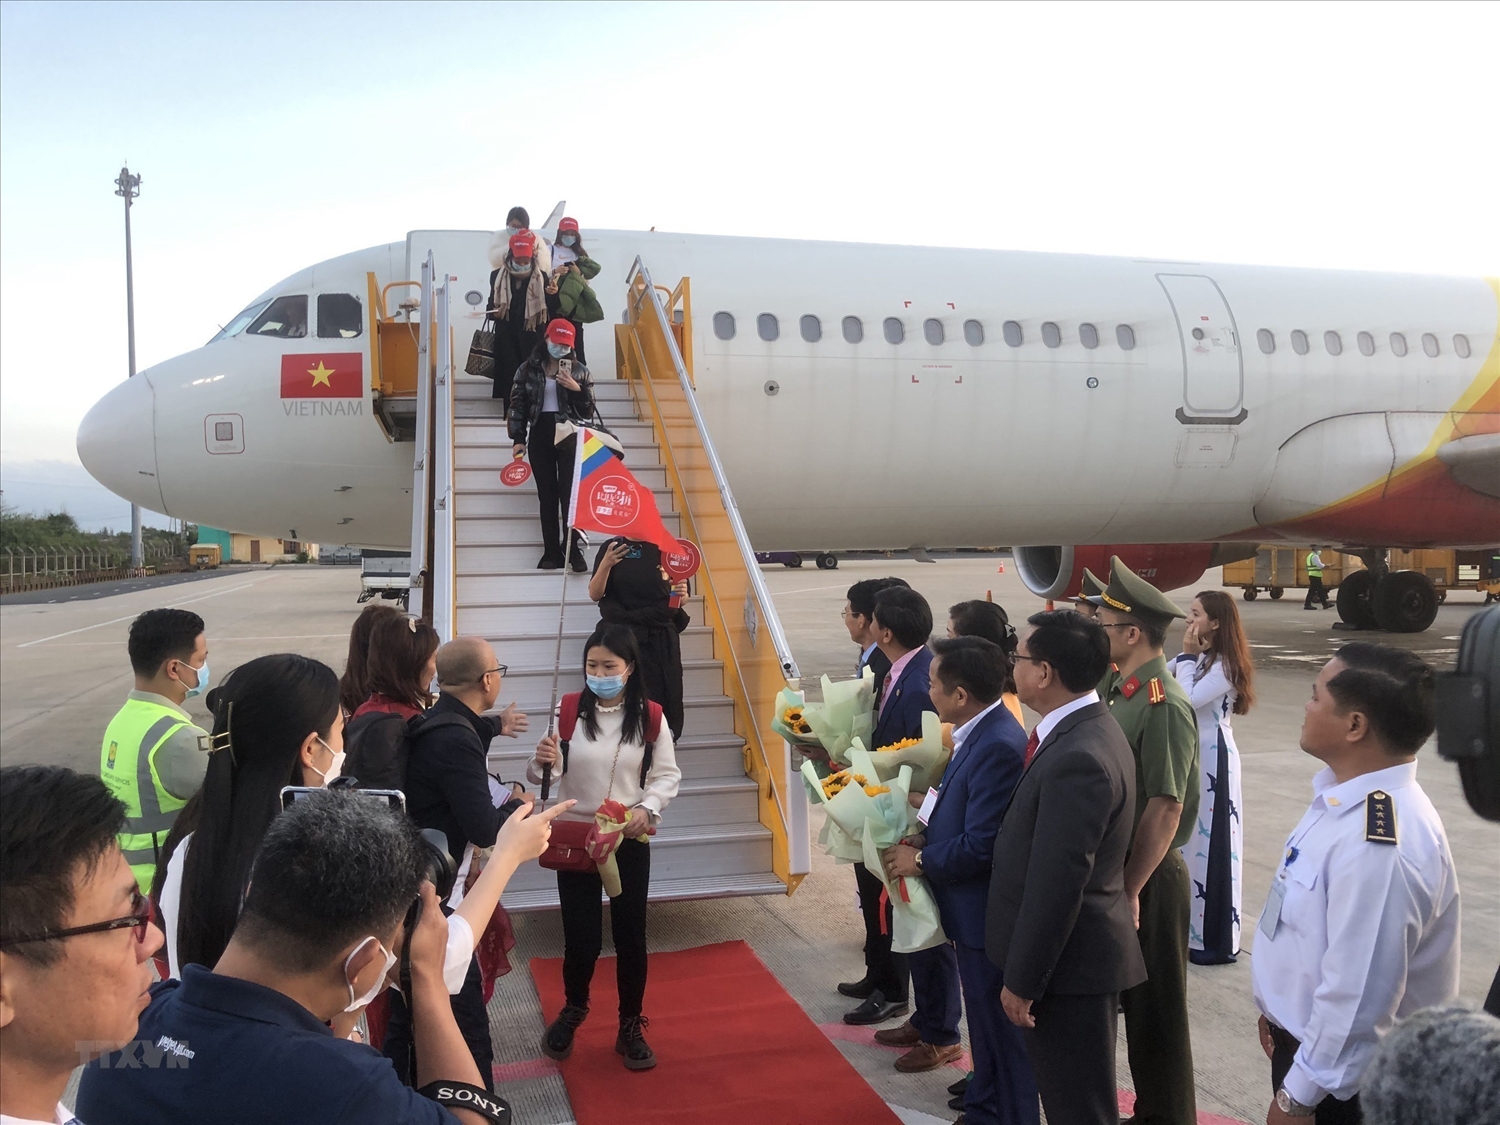 Tỉnh Khánh Hòa chuẩn bị chu đáo để đón khách Trung Quốc trở lại sau một thời gian tạm hoãn vì dịch Covid - 19